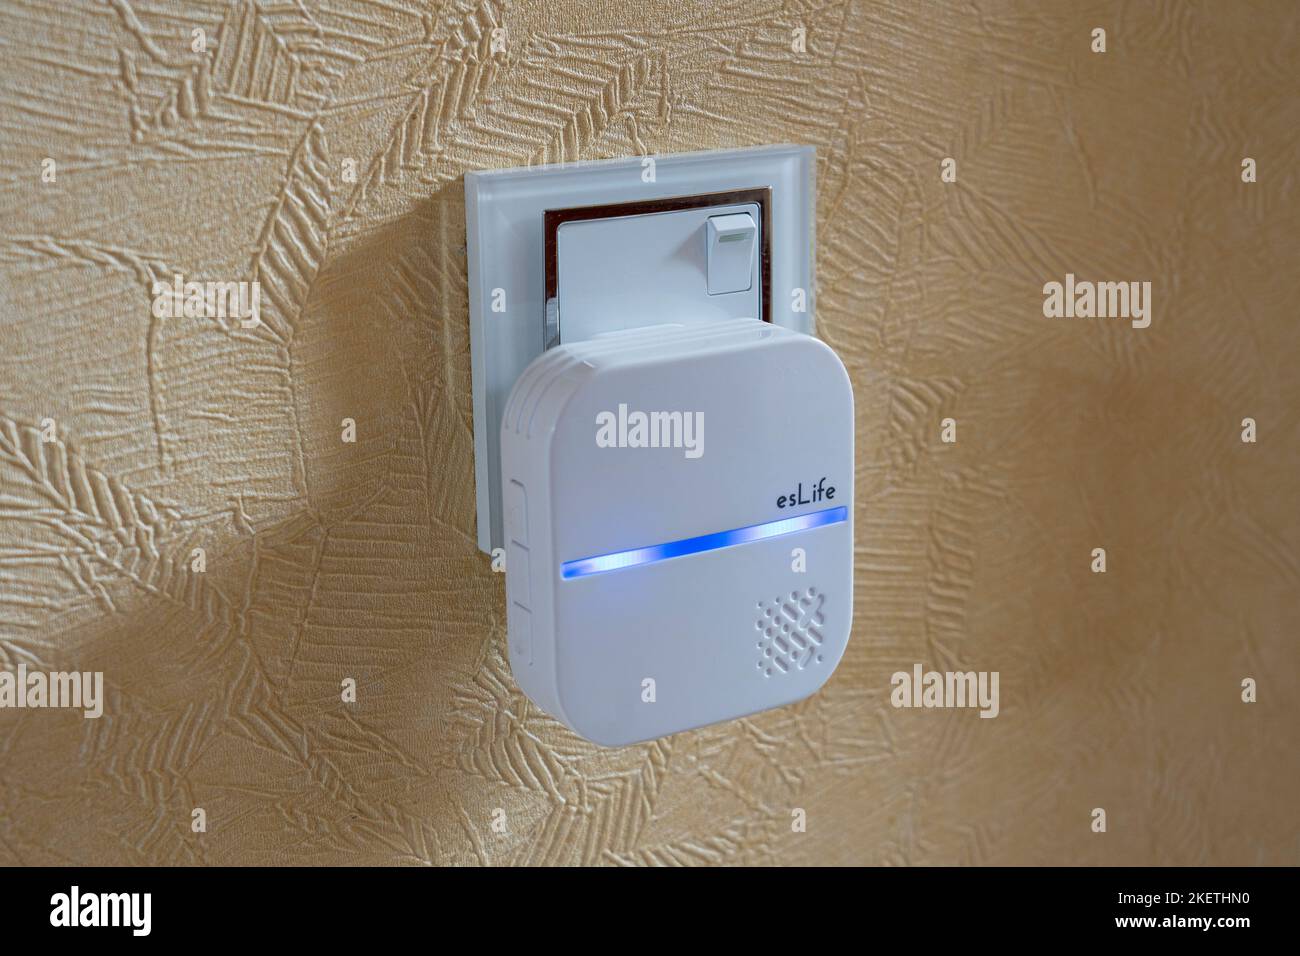 Un etxender wifi di esLife collegato a una presa e usato per amplificare il segnale Internet wifi in una casa per qualcuno che lavora da casa. Inghilterra, Regno Unito Foto Stock